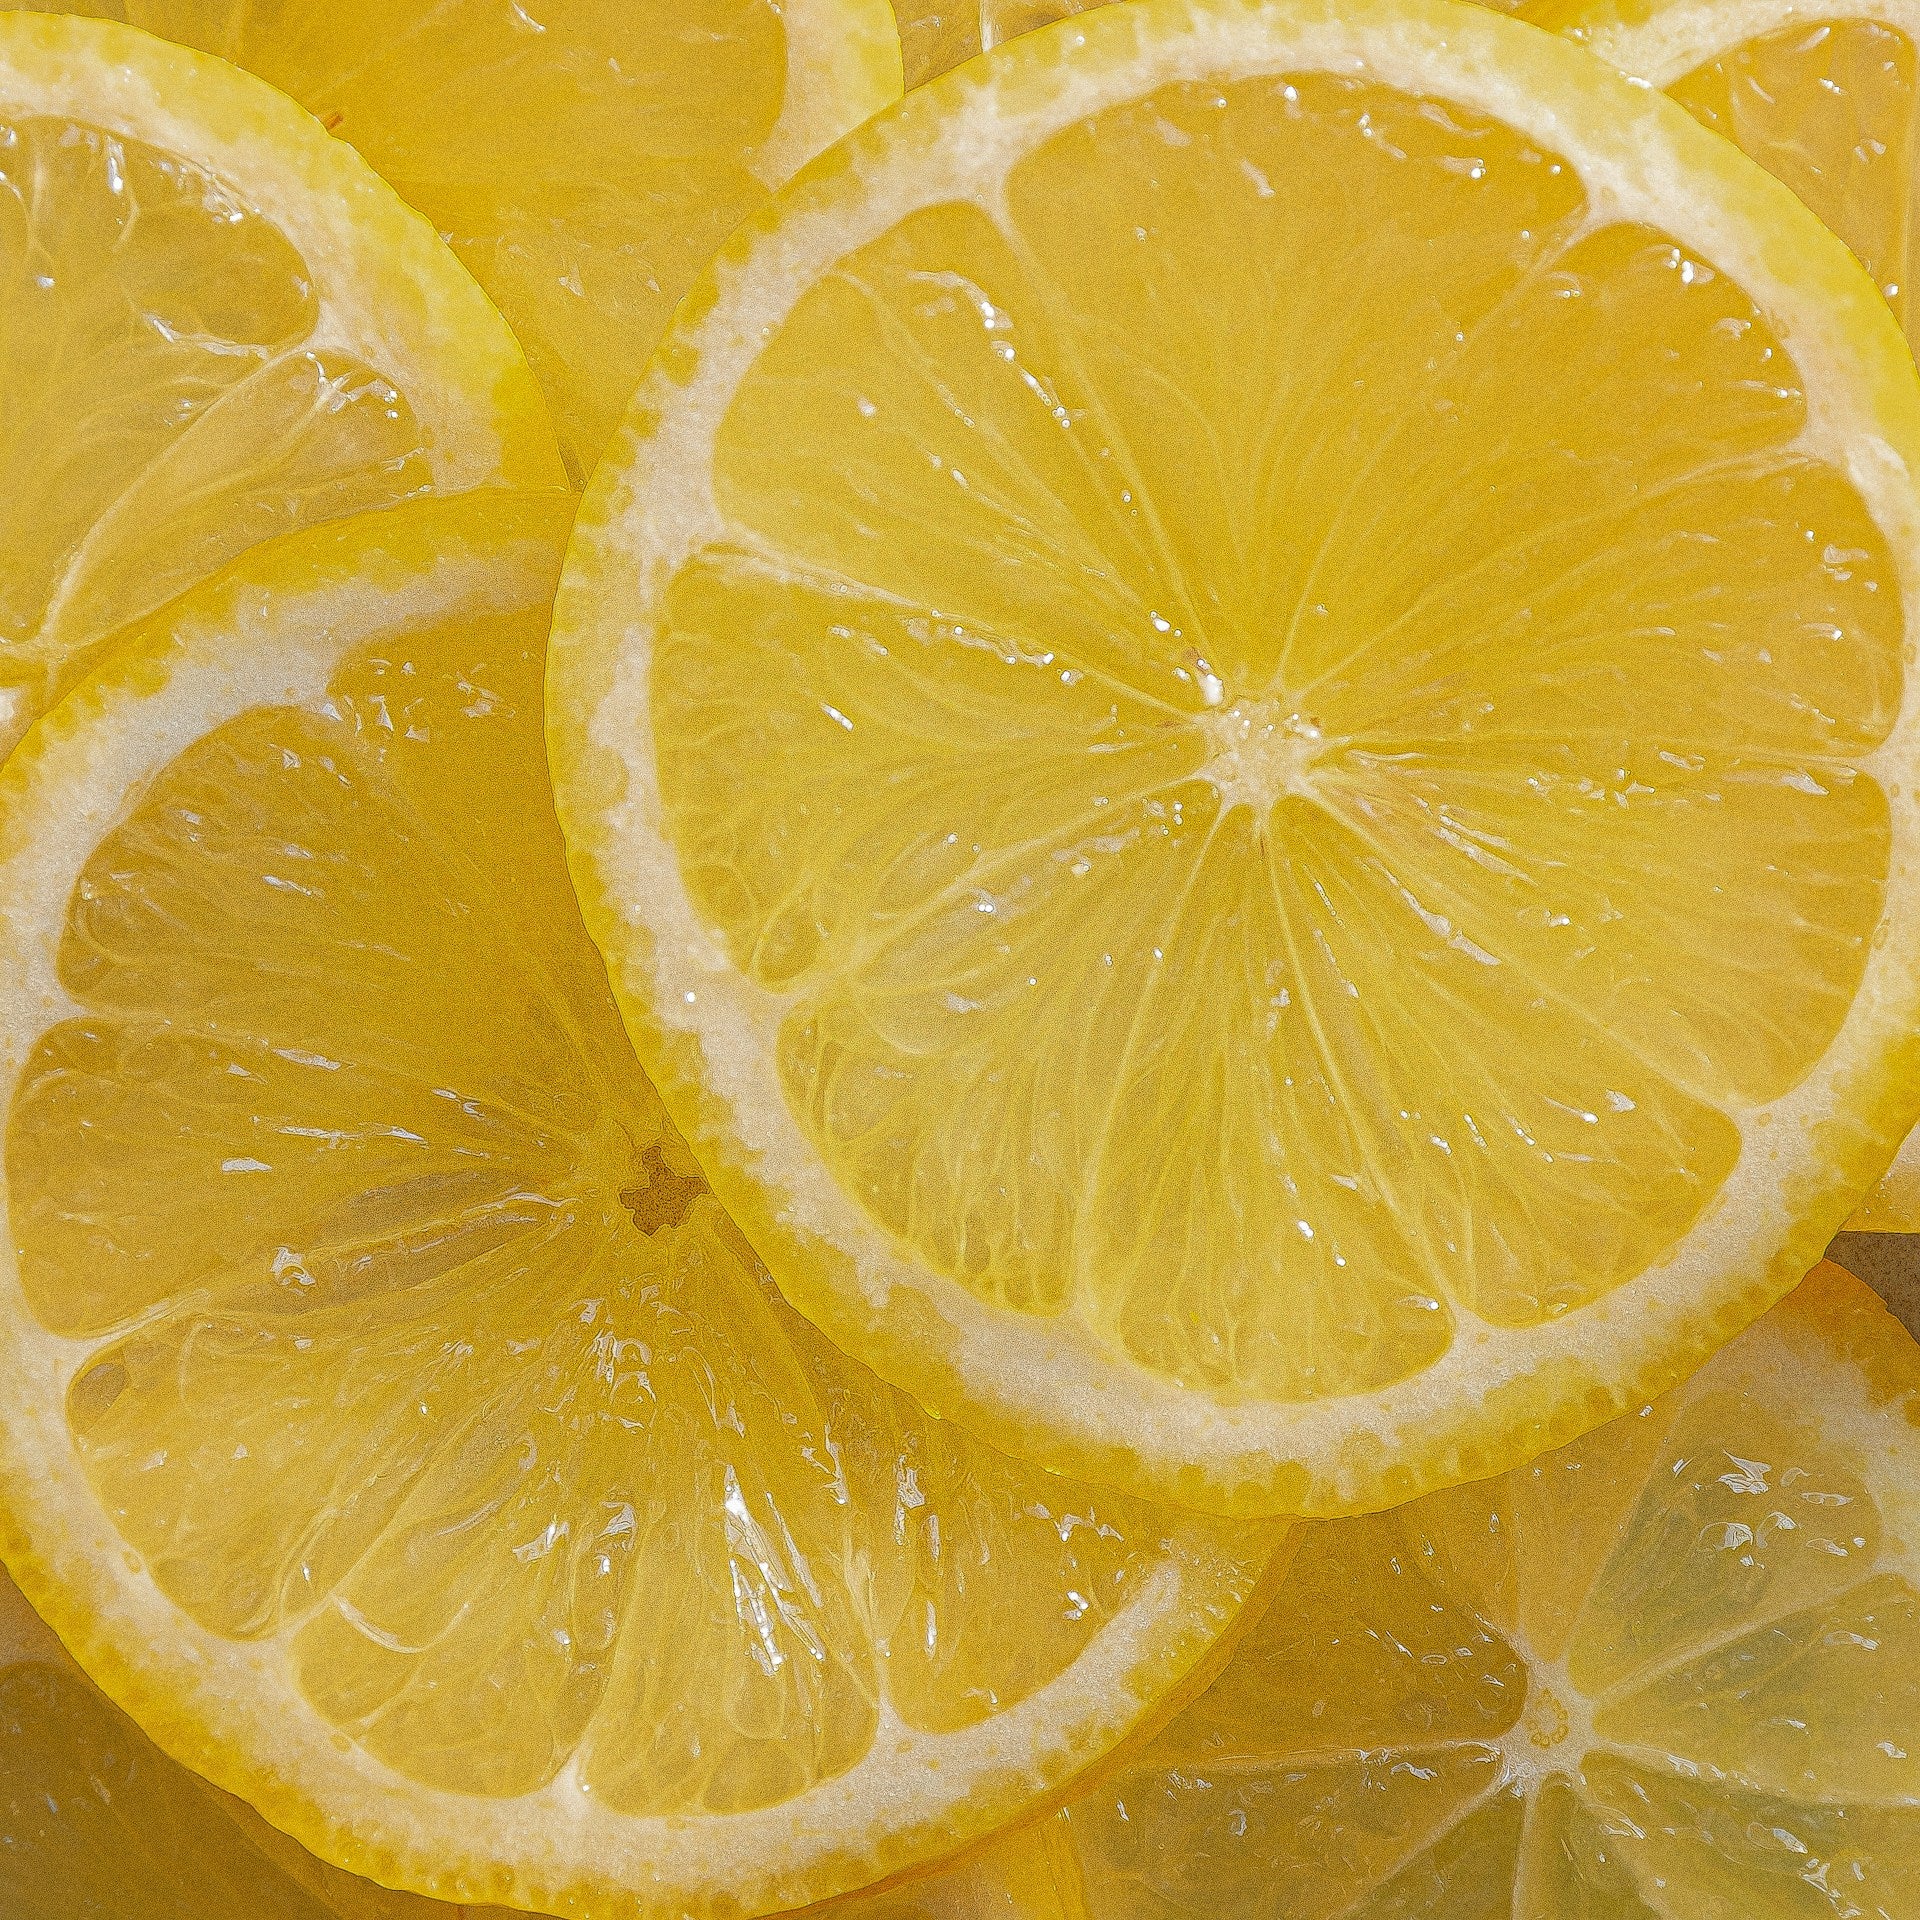 How Long Do Lemons Last In The Fridge? | Fridge.com